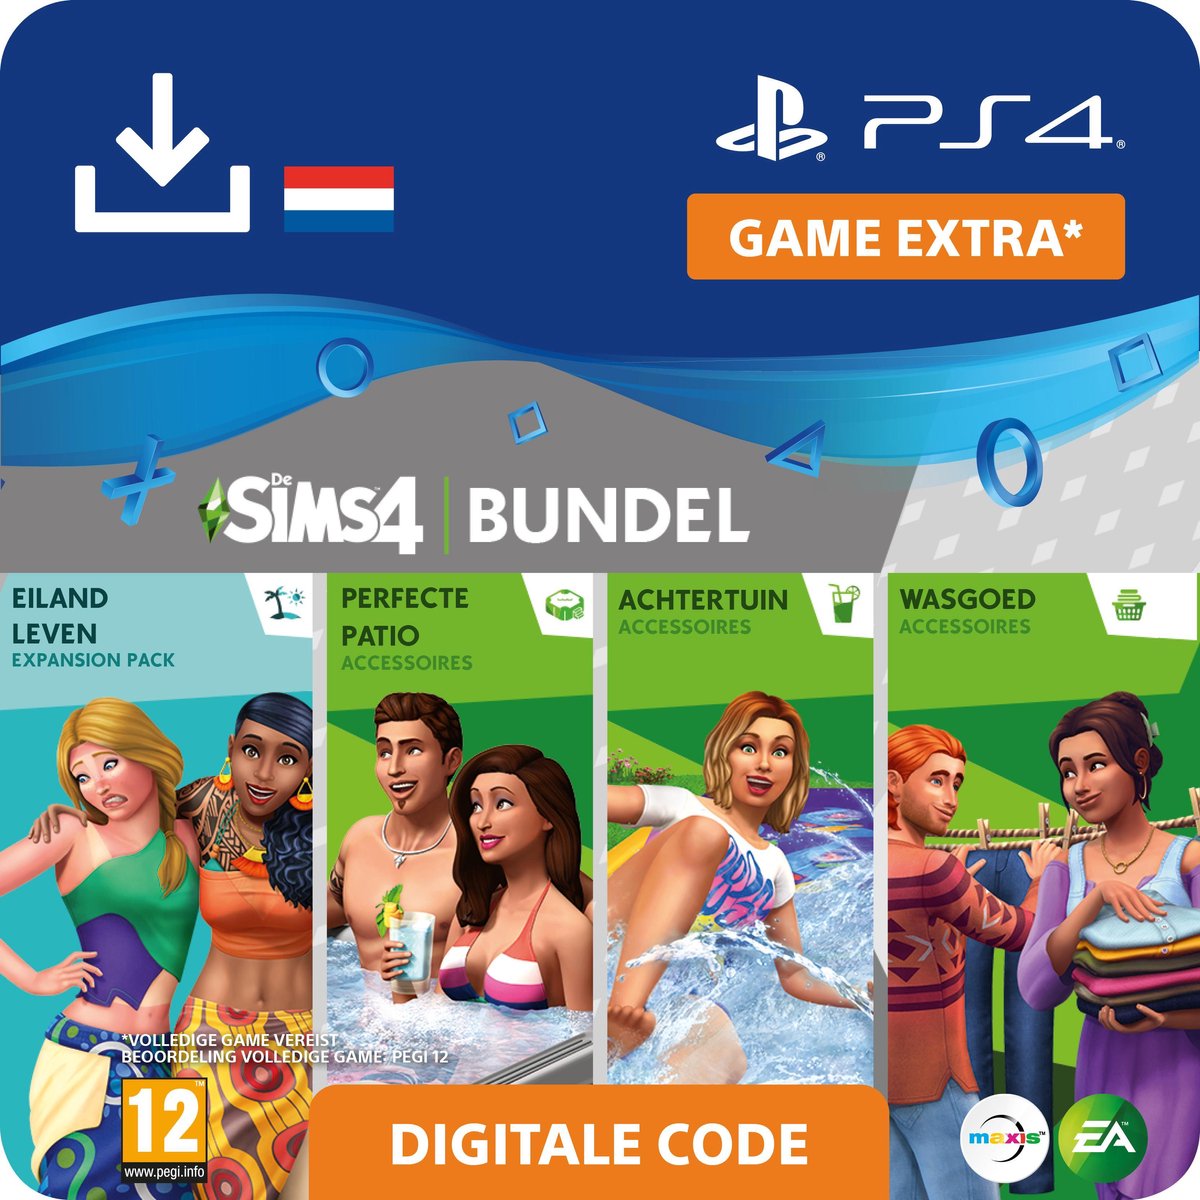 De Sims 4 - uitbreidingsset - Buitenpret Bundel - NL - PS4 download - Sony digitaal